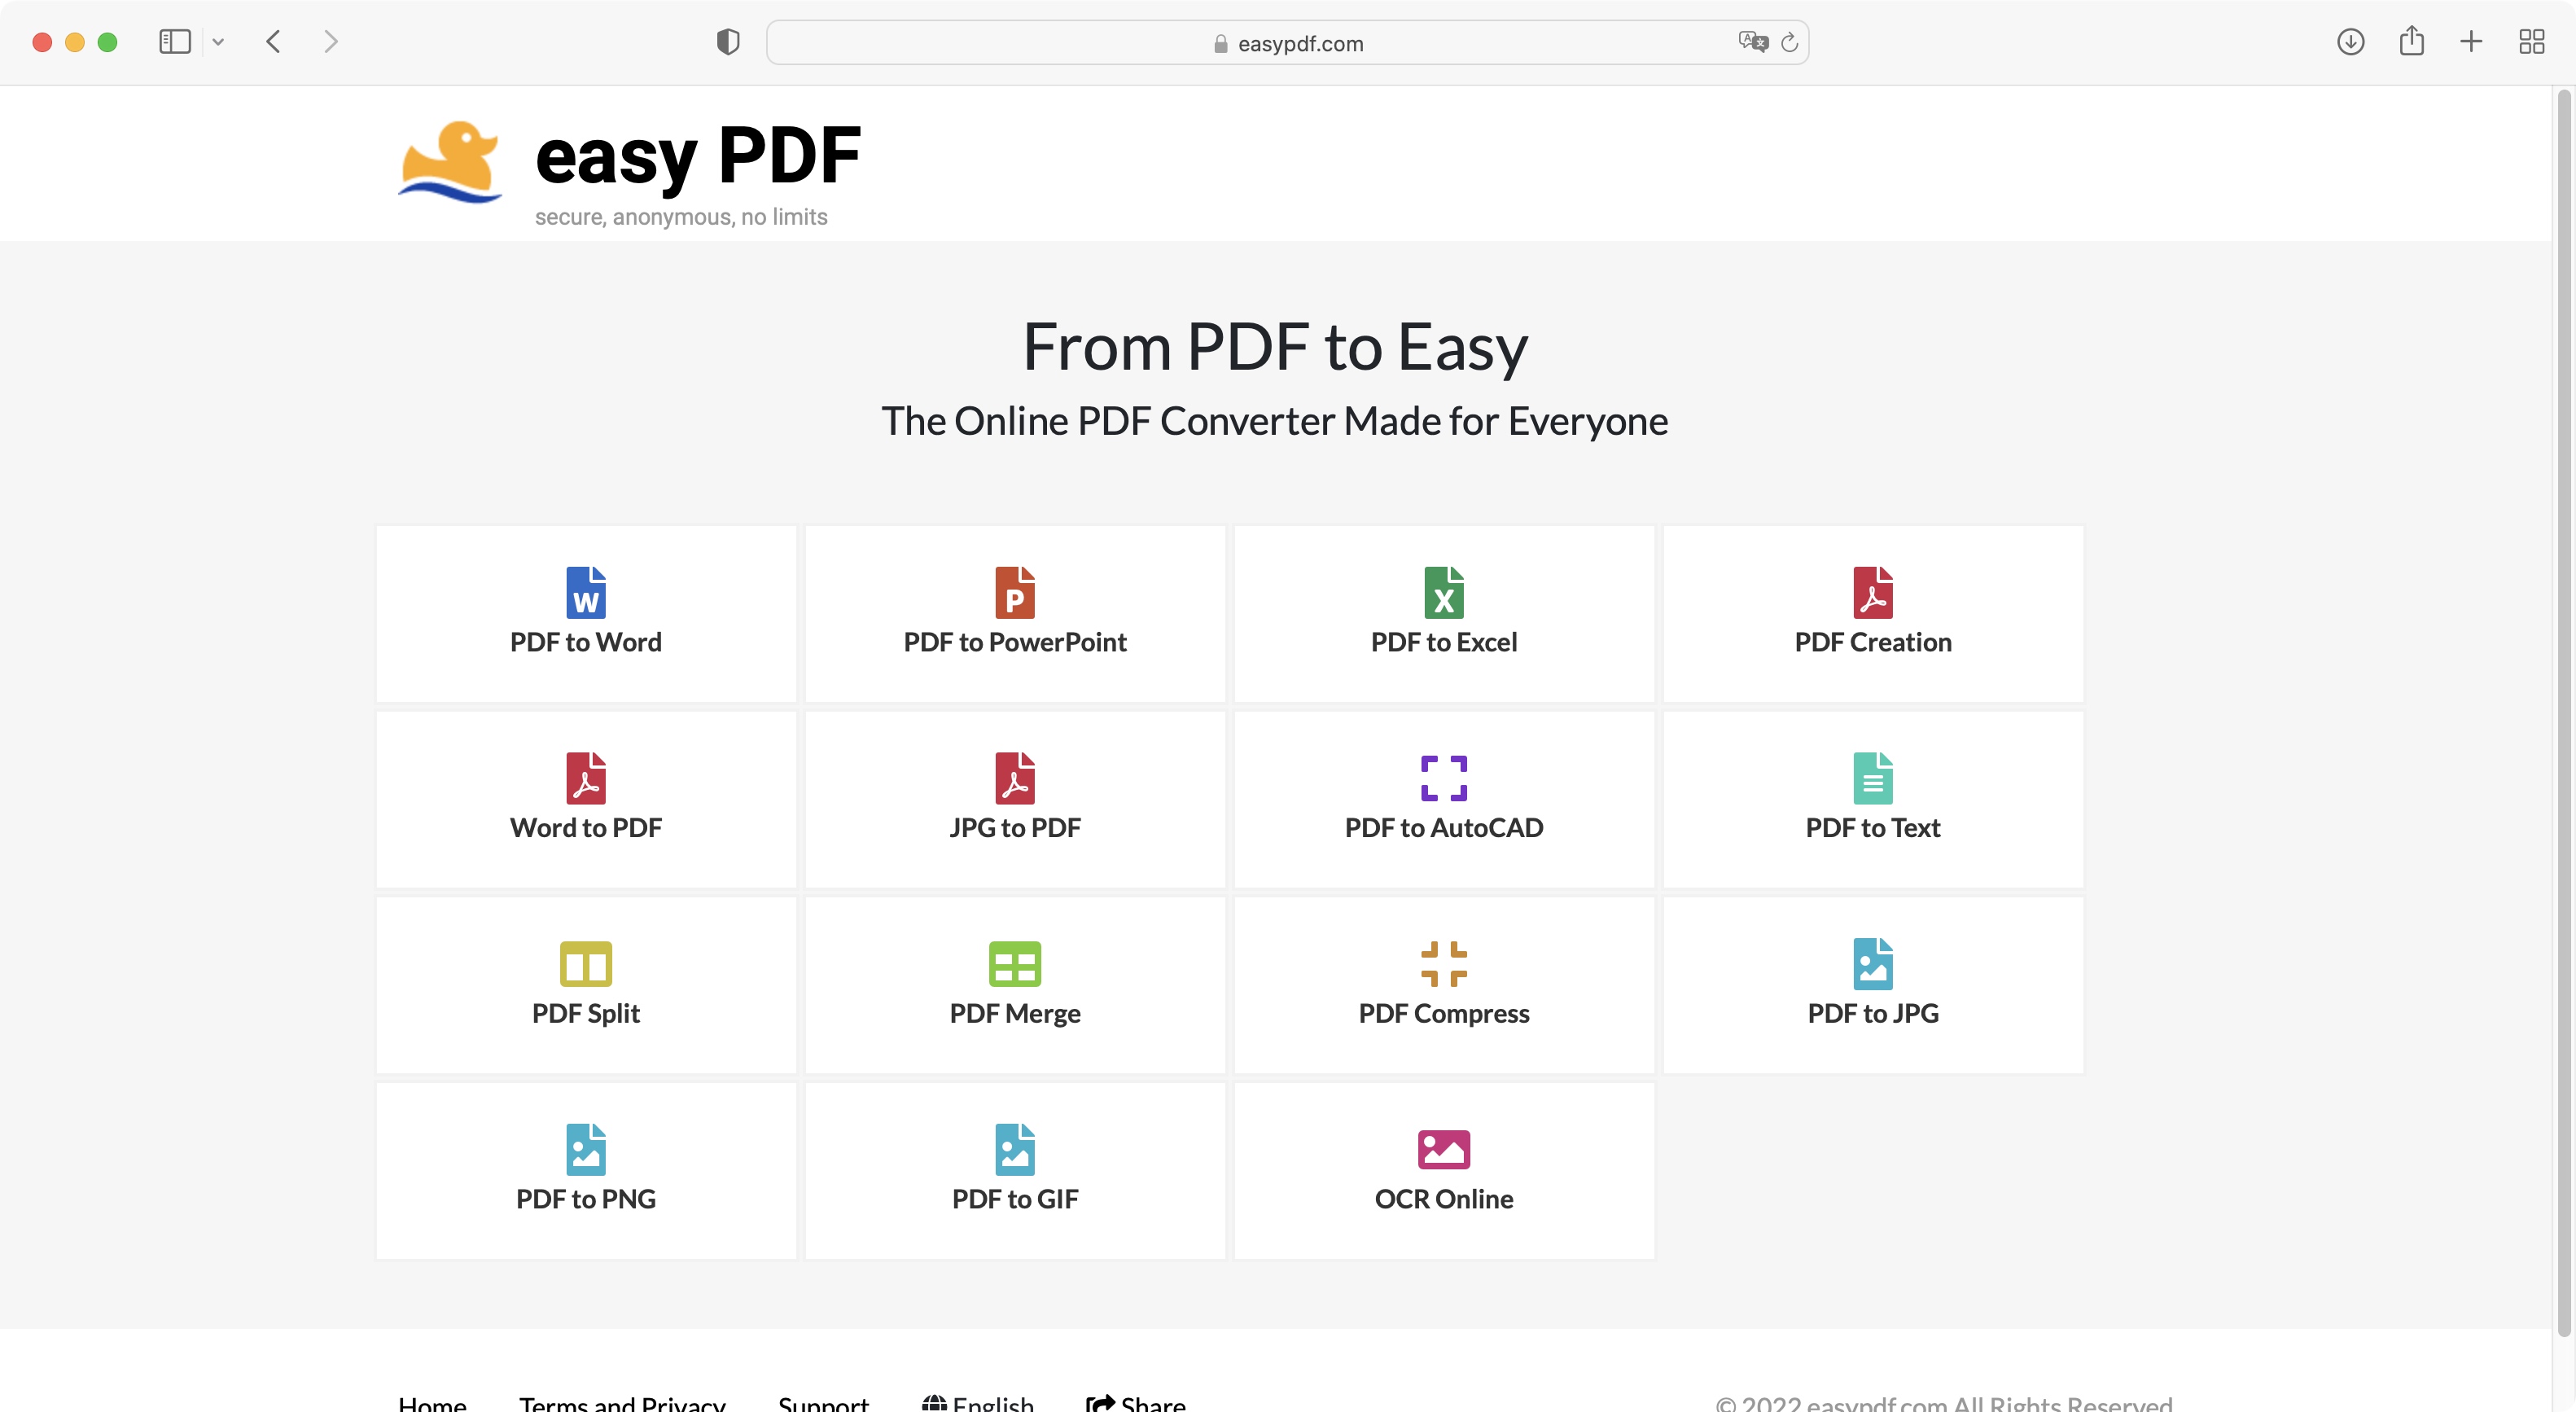 Is Get Easy PDF safe?